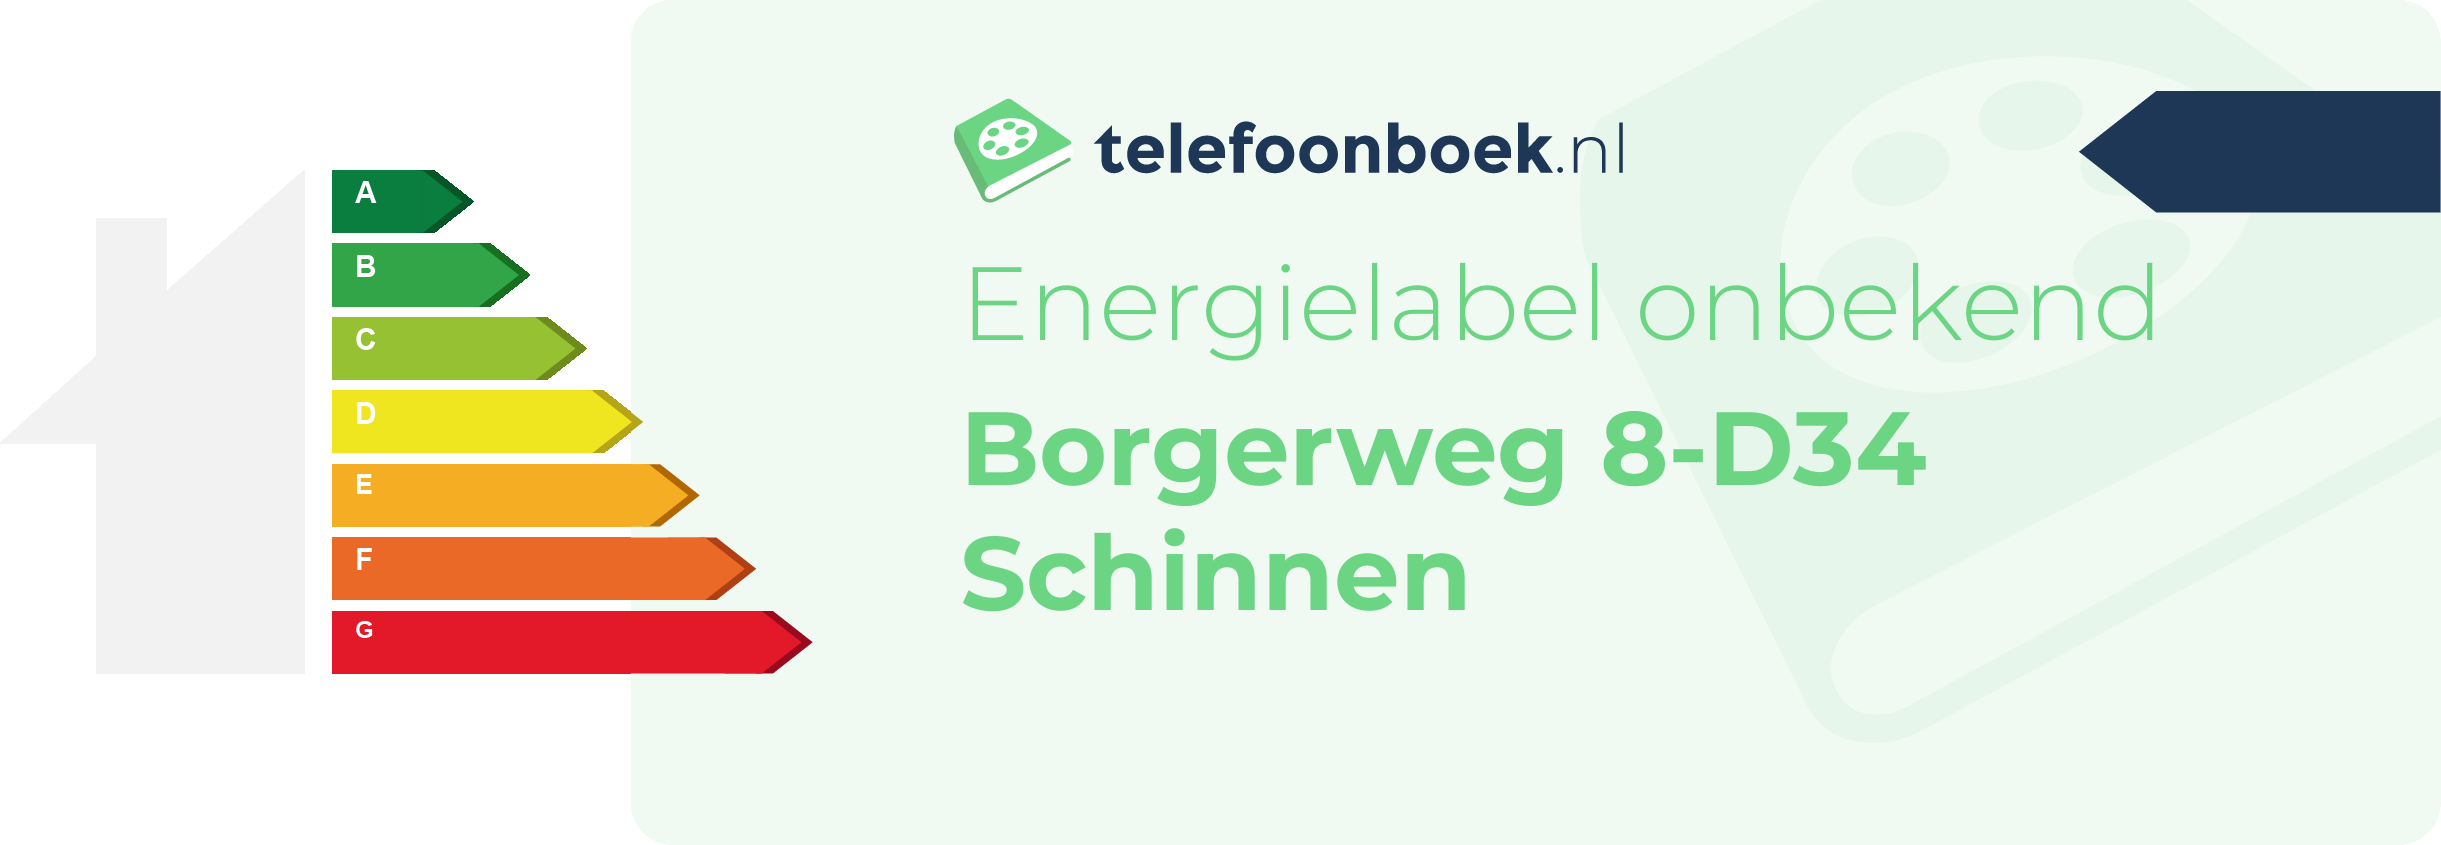 Energielabel Borgerweg 8-D34 Schinnen